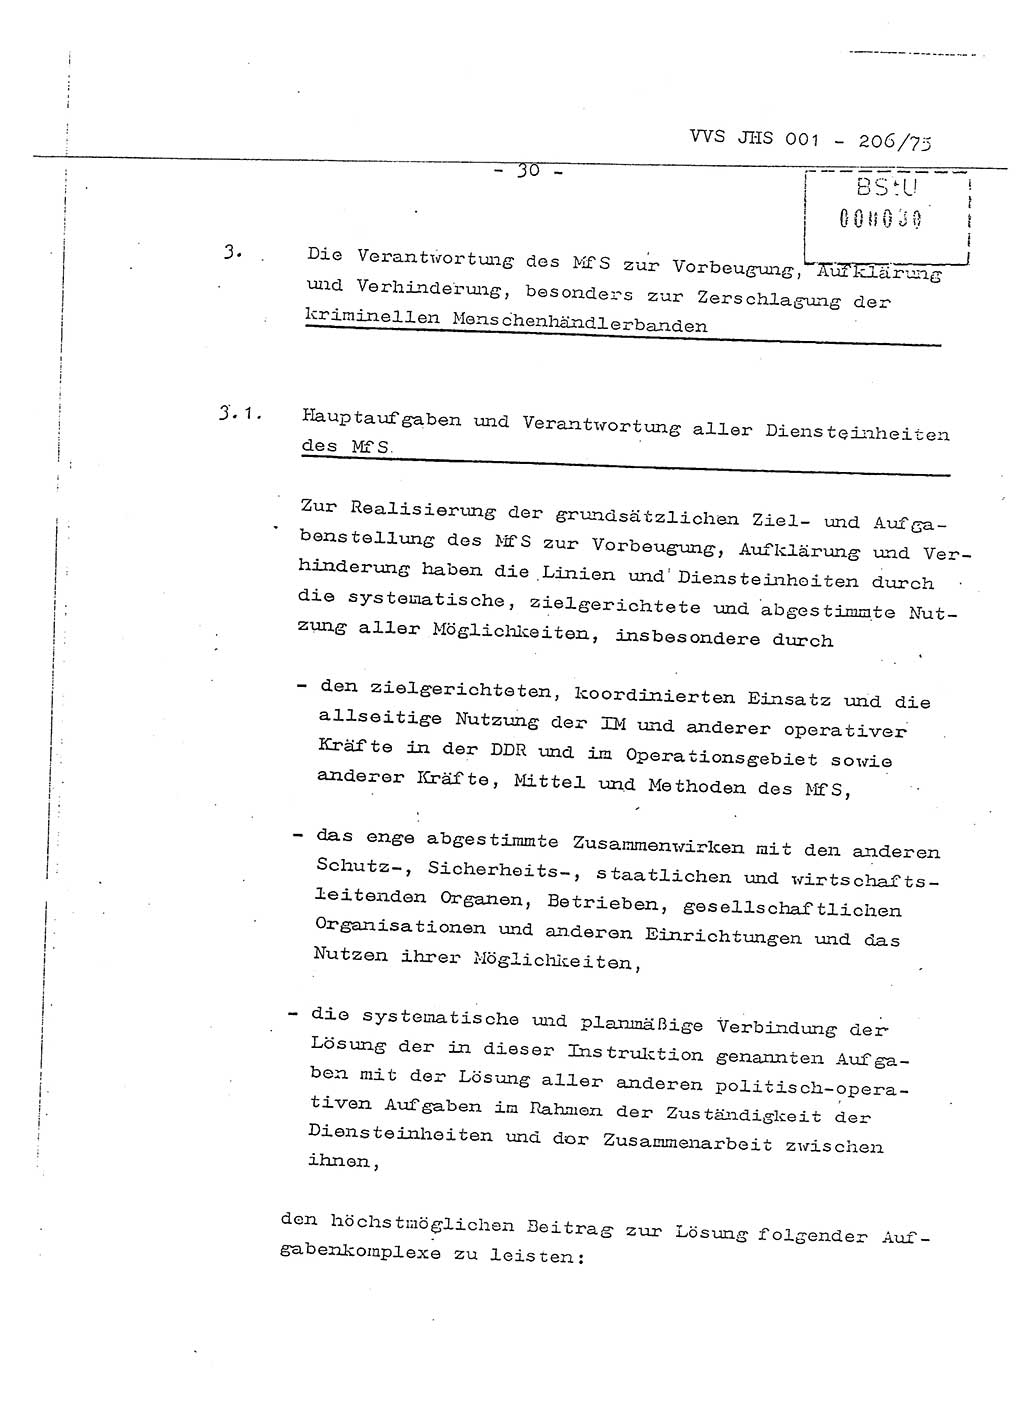 Dissertation Generalmajor Manfred Hummitzsch (Leiter der BV Leipzig), Generalmajor Heinz Fiedler (HA Ⅵ), Oberst Rolf Fister (HA Ⅸ), Ministerium für Staatssicherheit (MfS) [Deutsche Demokratische Republik (DDR)], Juristische Hochschule (JHS), Vertrauliche Verschlußsache (VVS) 001-206/75, Potsdam 1975, Seite 30 (Diss. MfS DDR JHS VVS 001-206/75 1975, S. 30)